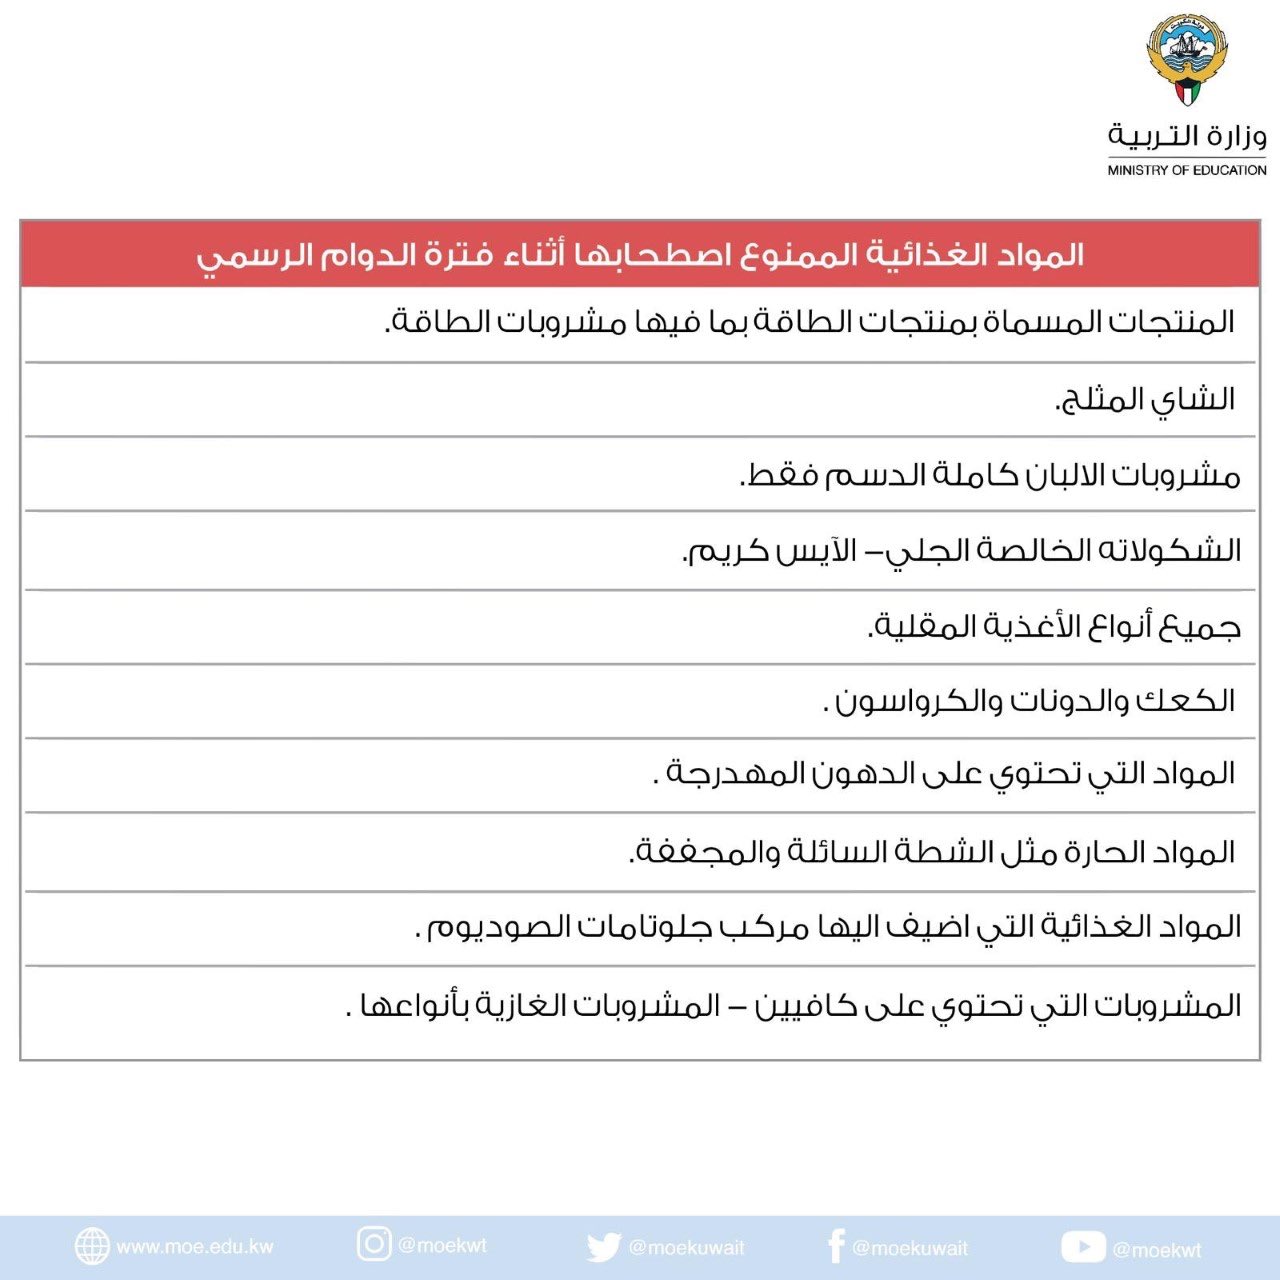 وزارة التعليم بالكويت تطلب مدرسين